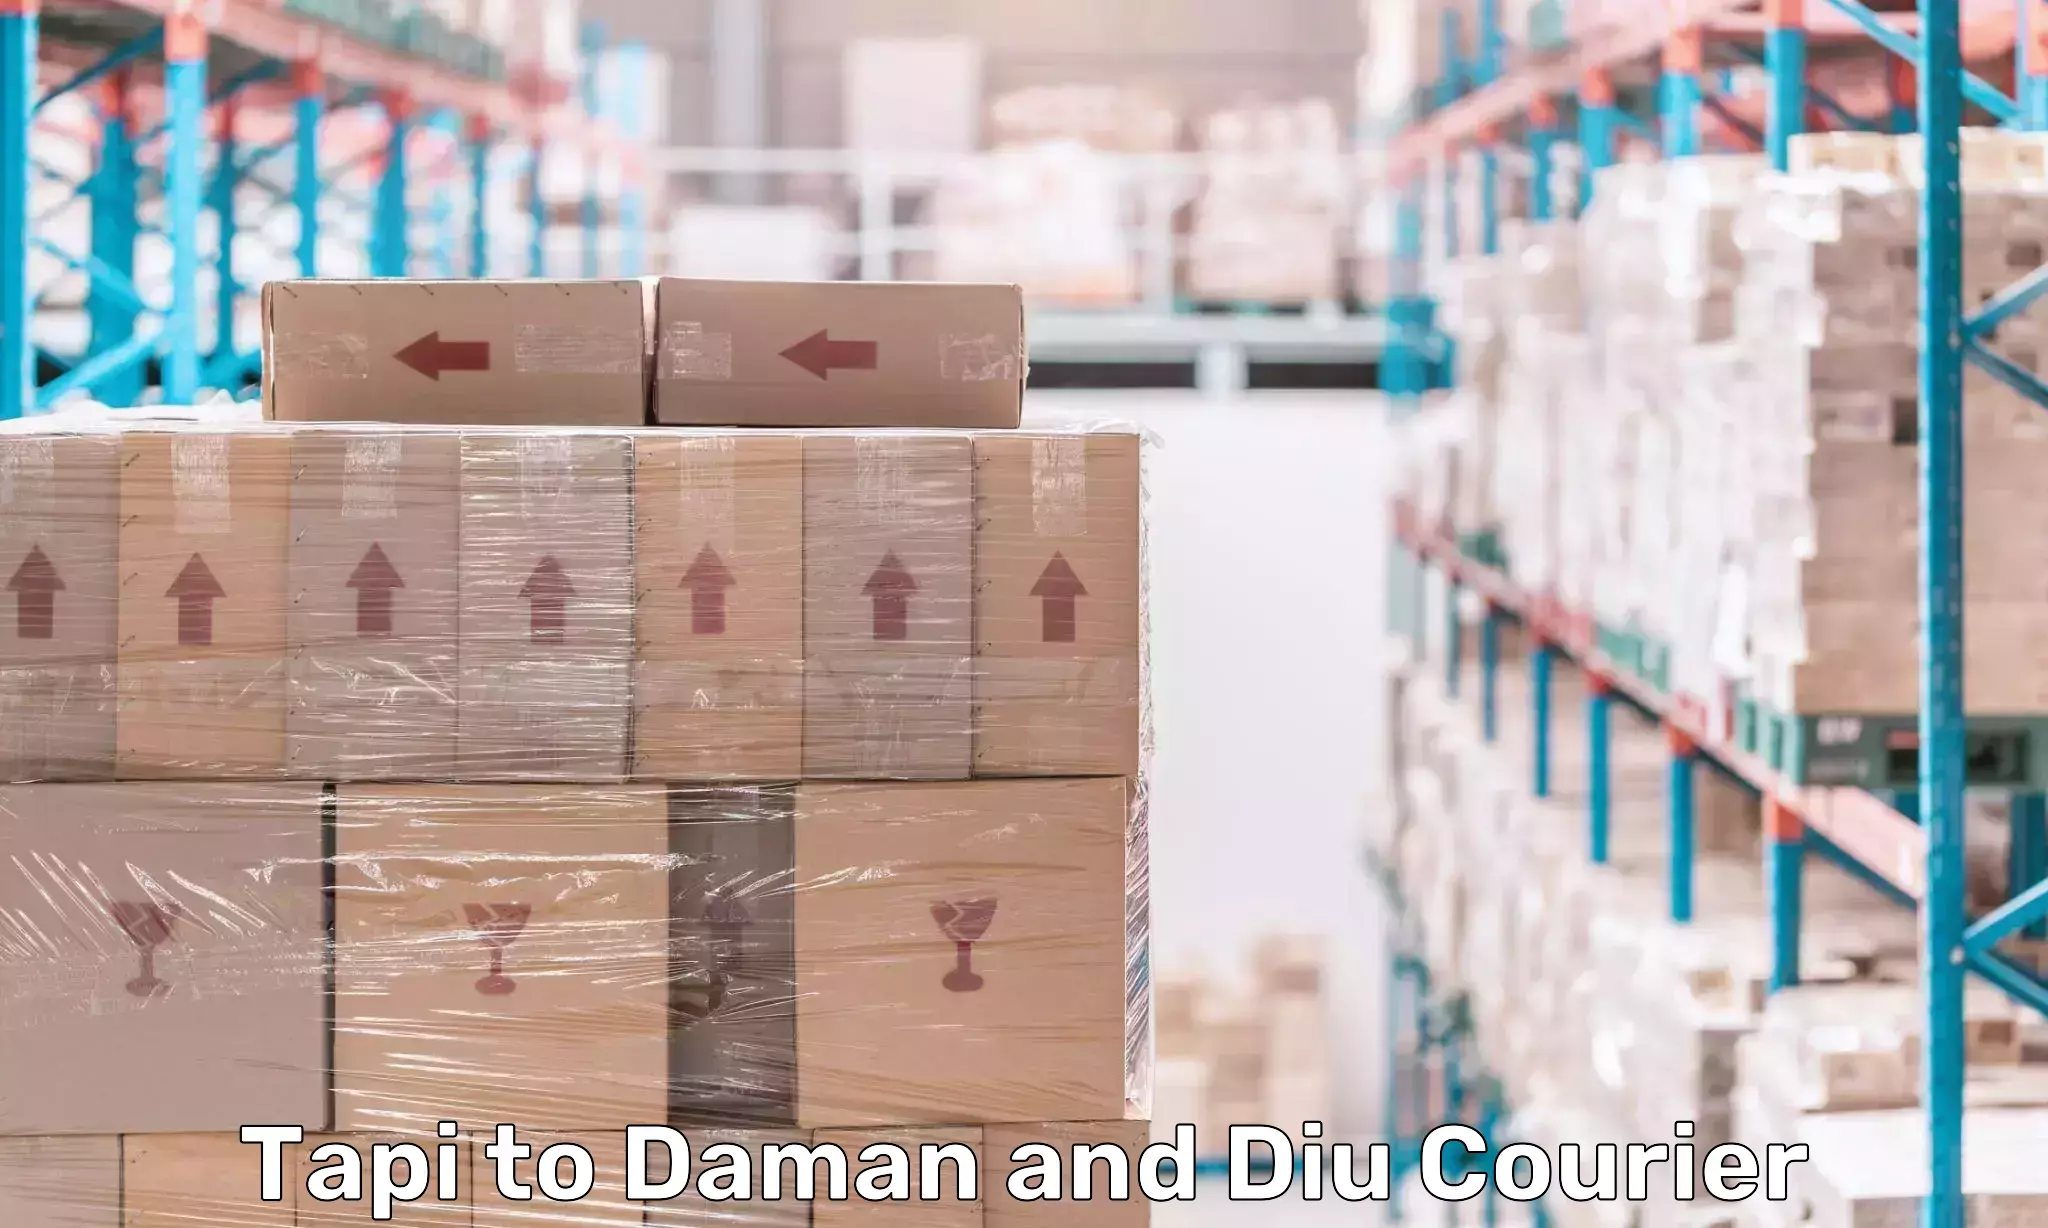 Efficient parcel transport Tapi to Daman and Diu